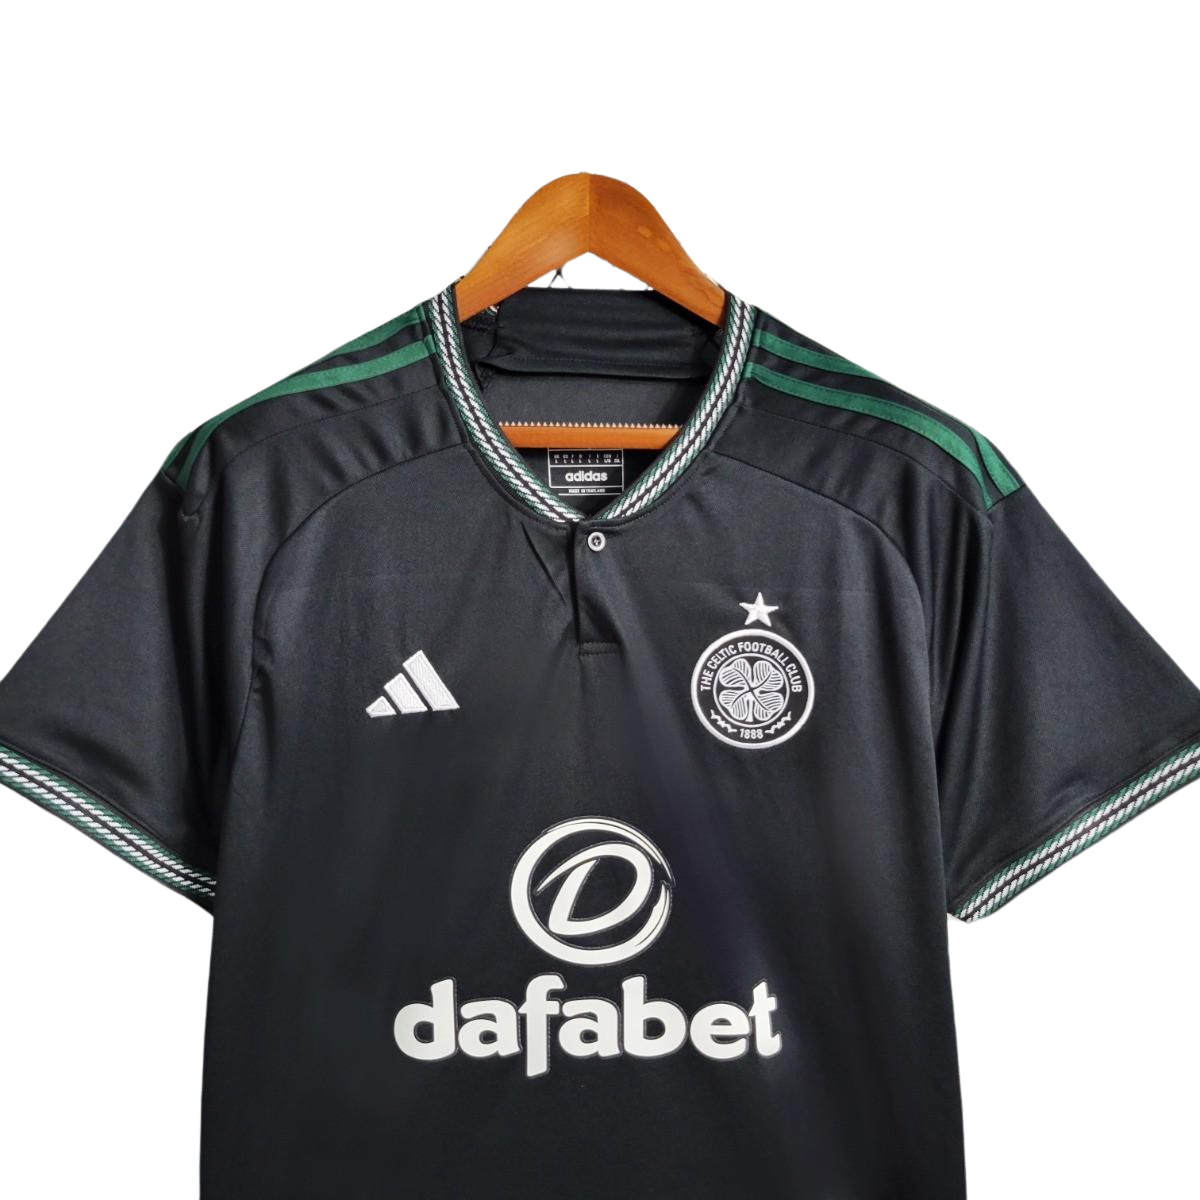 Celtic FC 23/24 Away Kit - Fan Version - Front